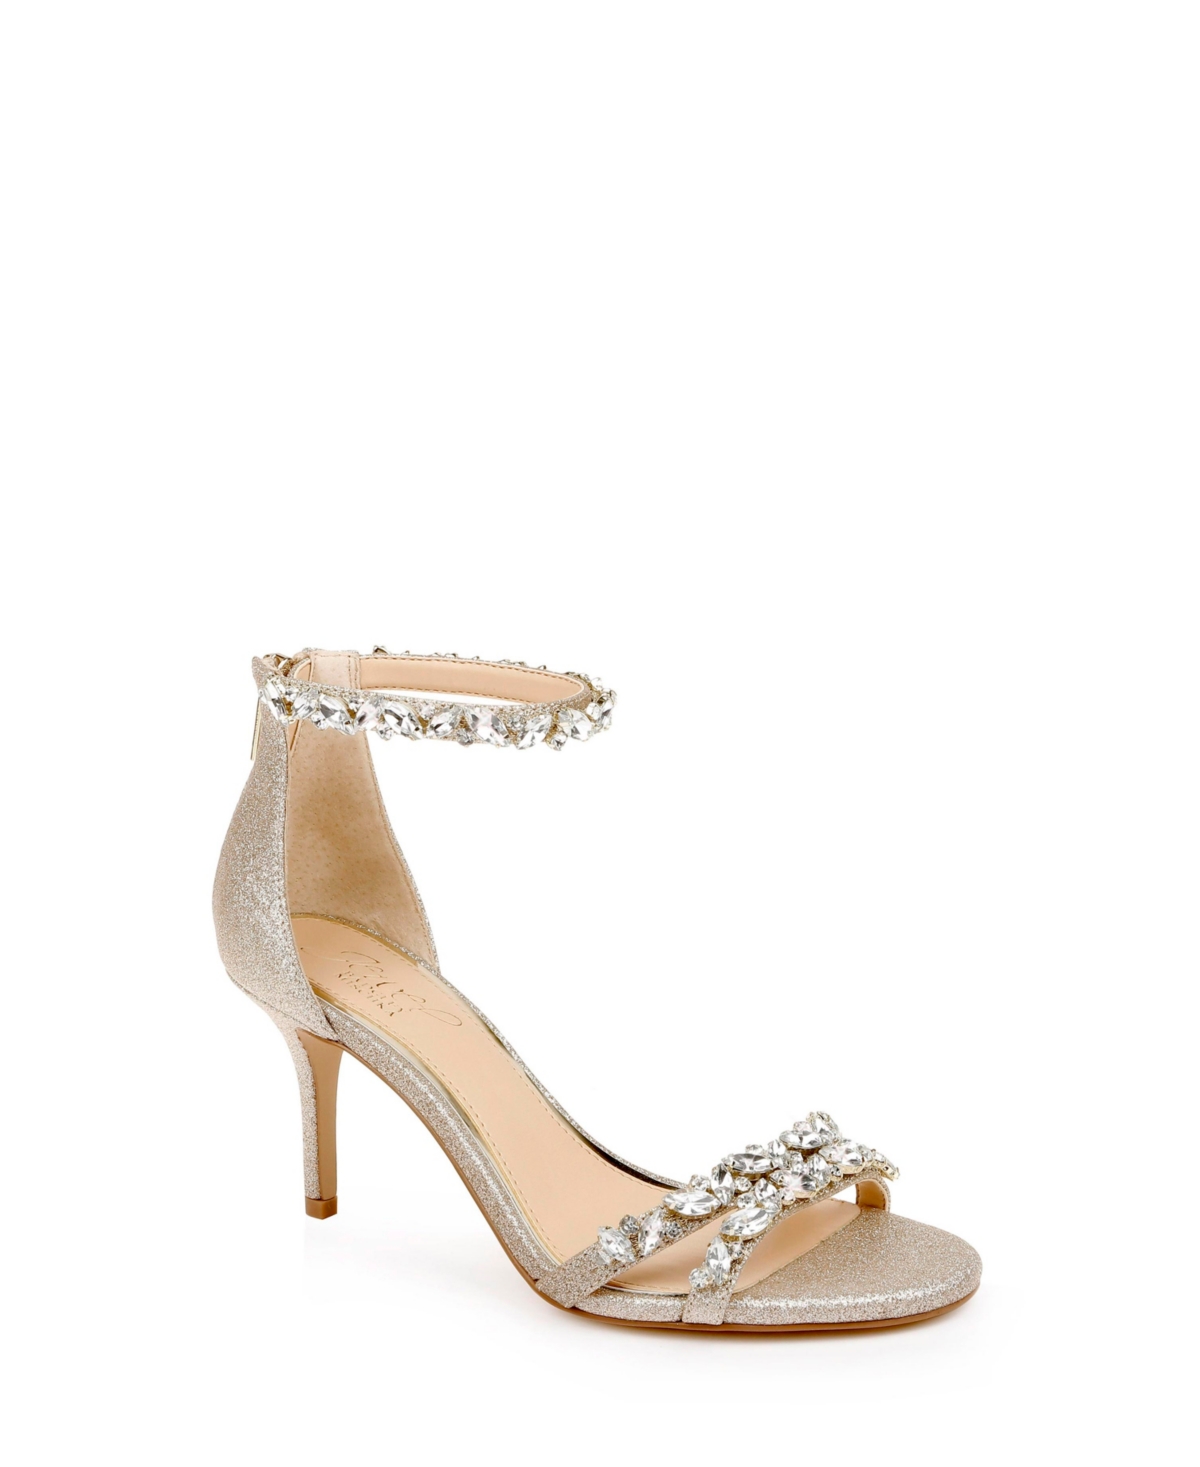 Women's Caroline Embellished Ankle Strap Evening Sandals - Silver-Tone Glitter